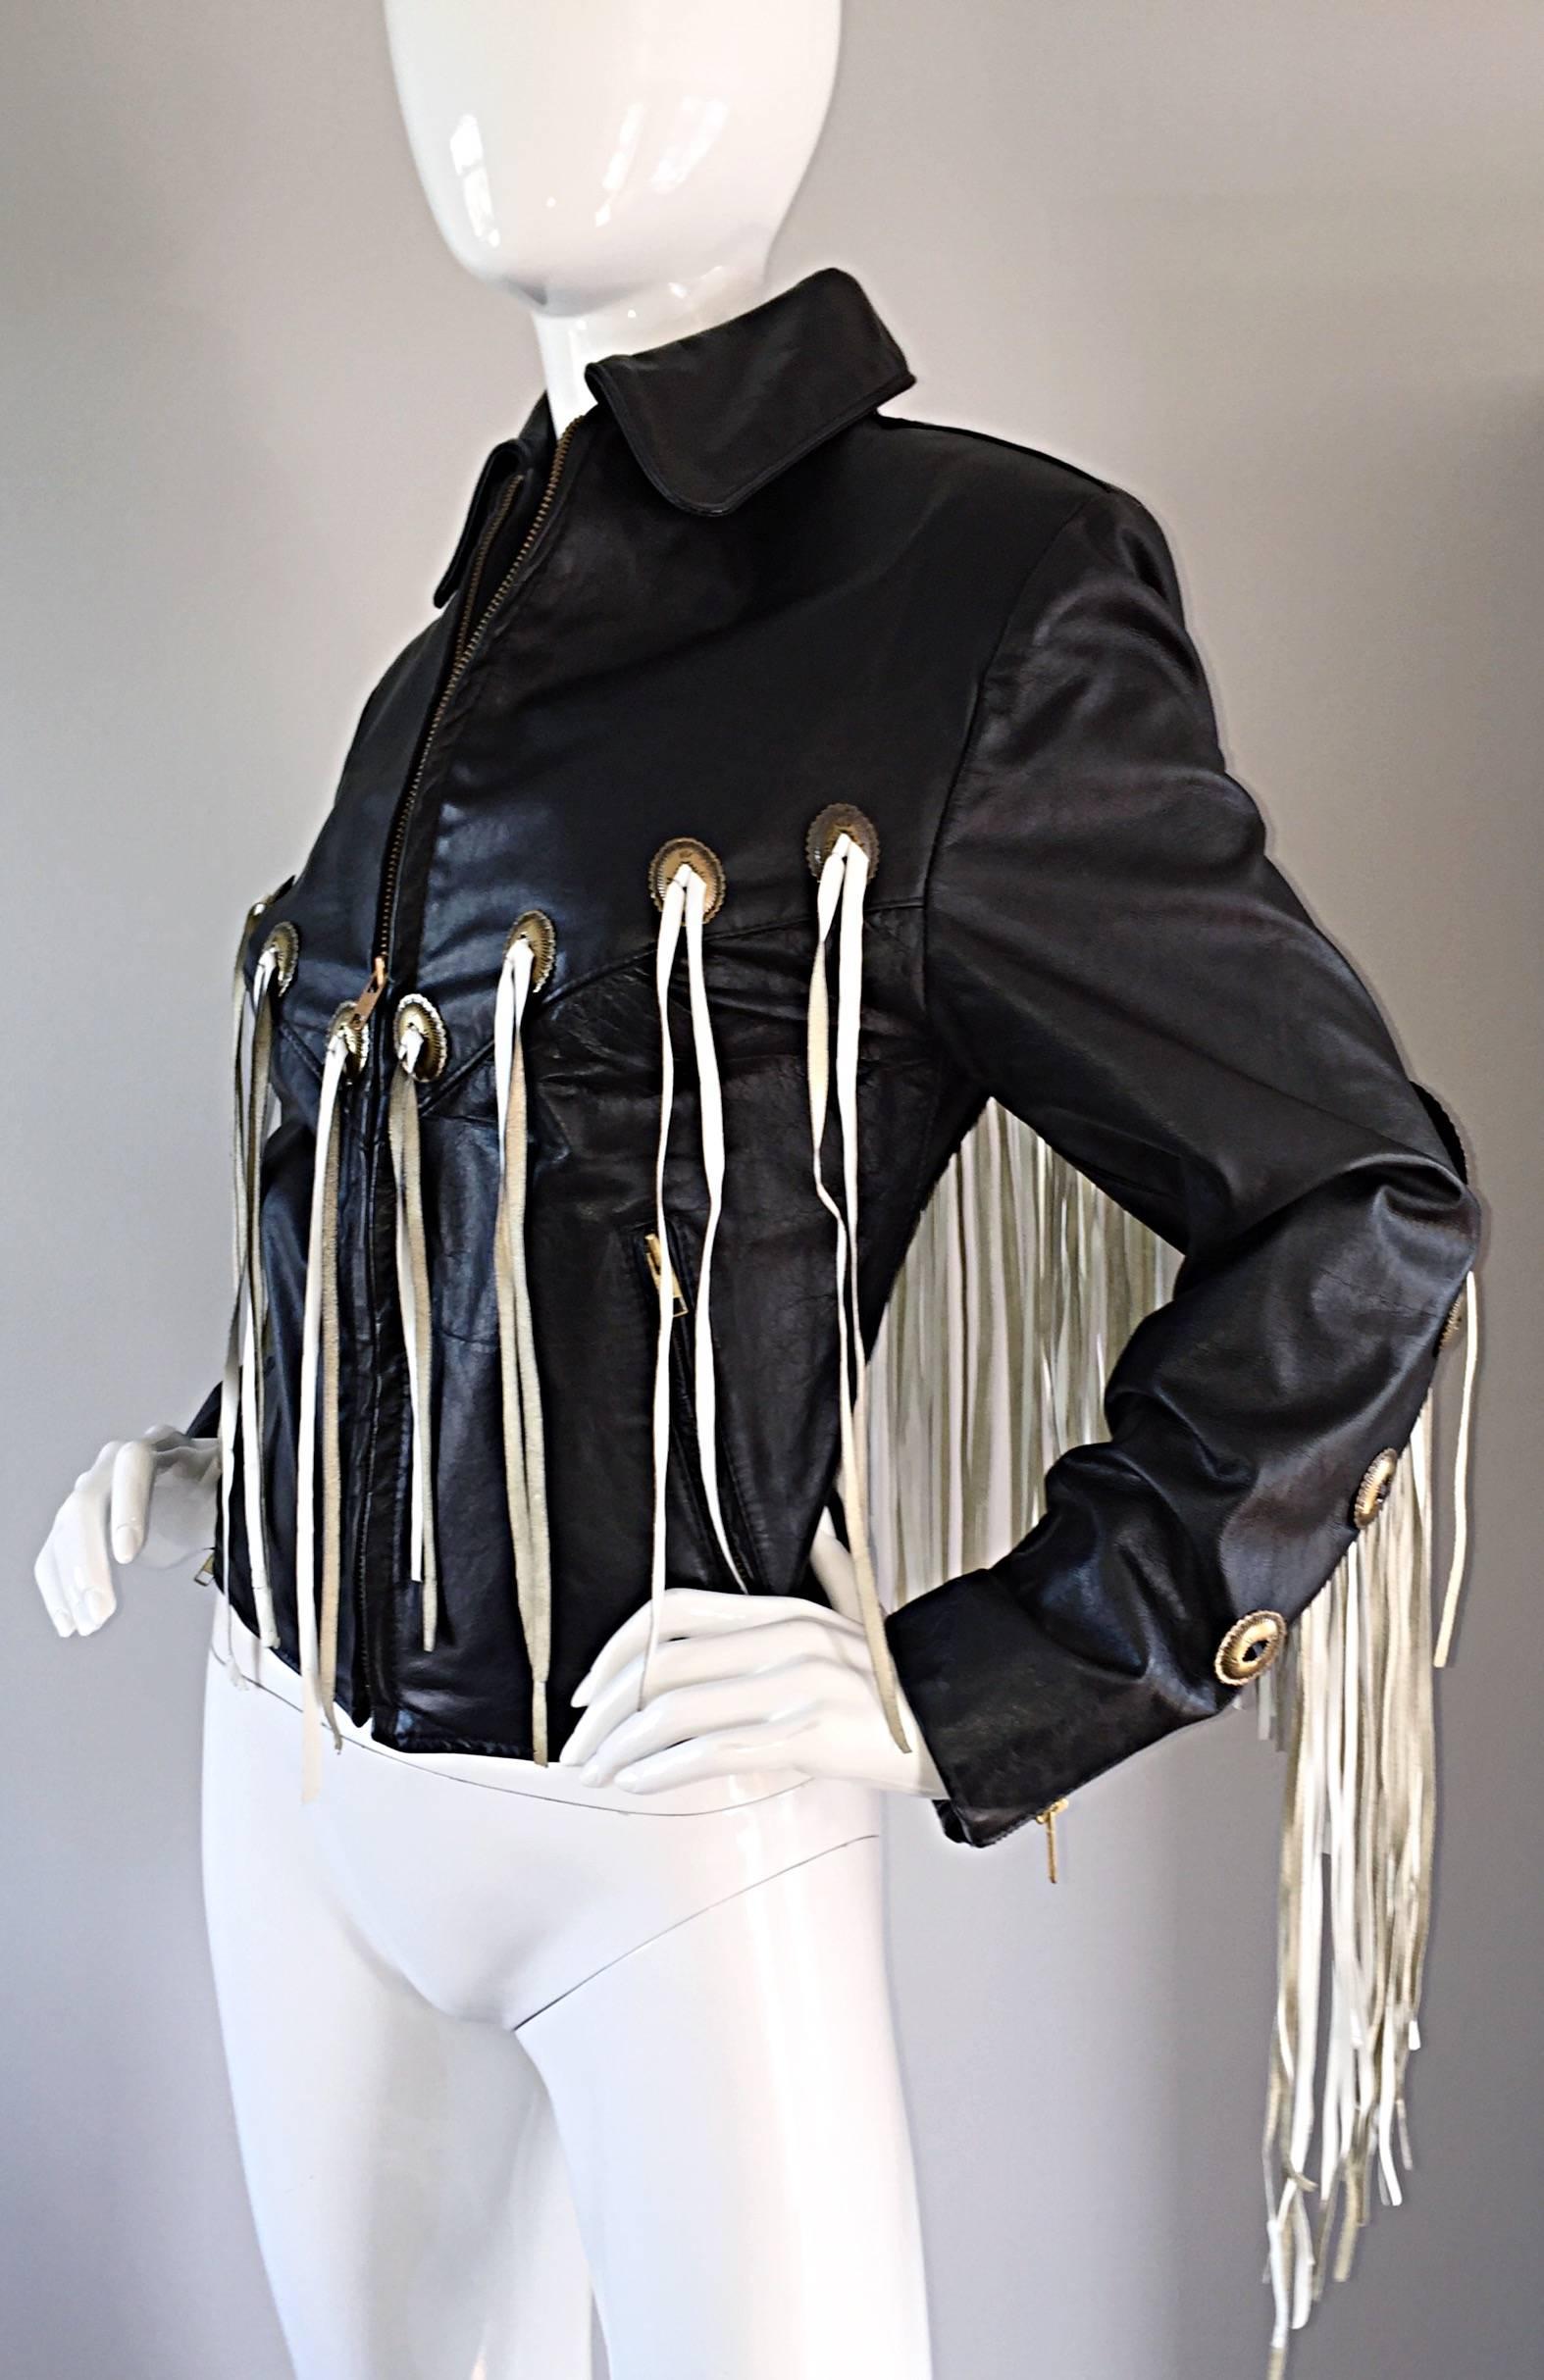 Erstaunlich Vintage schwarze Lederjacke:: mit weißen Fransen in der gesamten Vorder-und Rückseite! Verziert mit Messingplatten:: auch auf der Vorder- und Rückseite. Das Mieder wird mit einem Reißverschluss geschlossen. Sieht so toll aus... schwankt